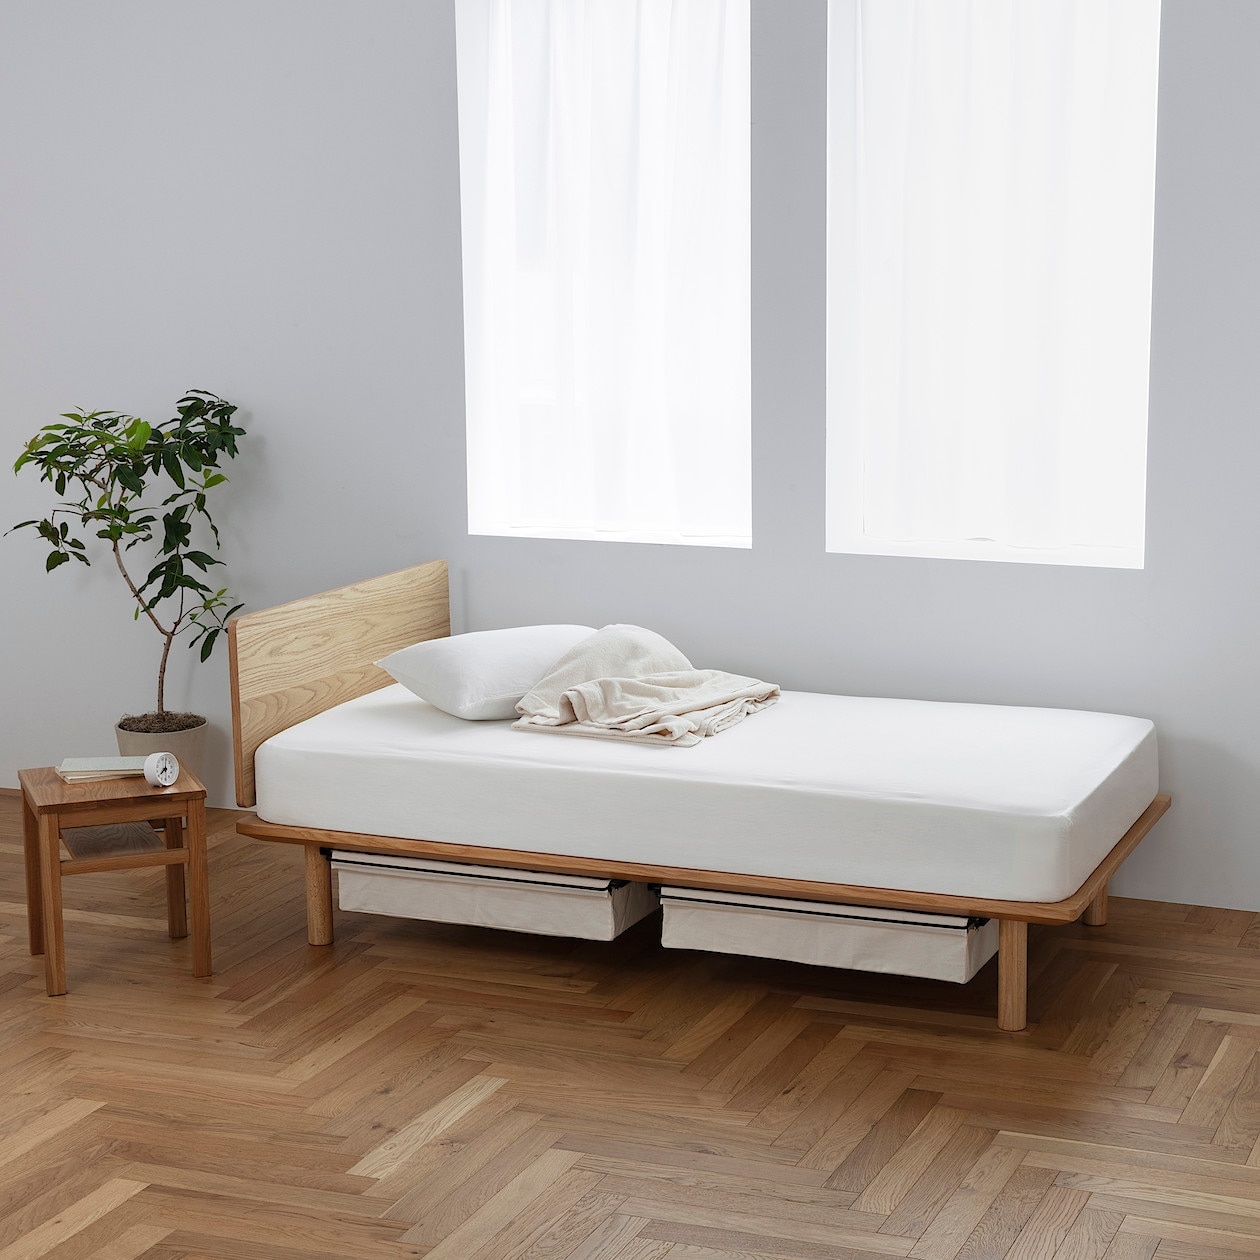 無印良品 木製ベッド シングル ベッド下収納付き - シングルベッド